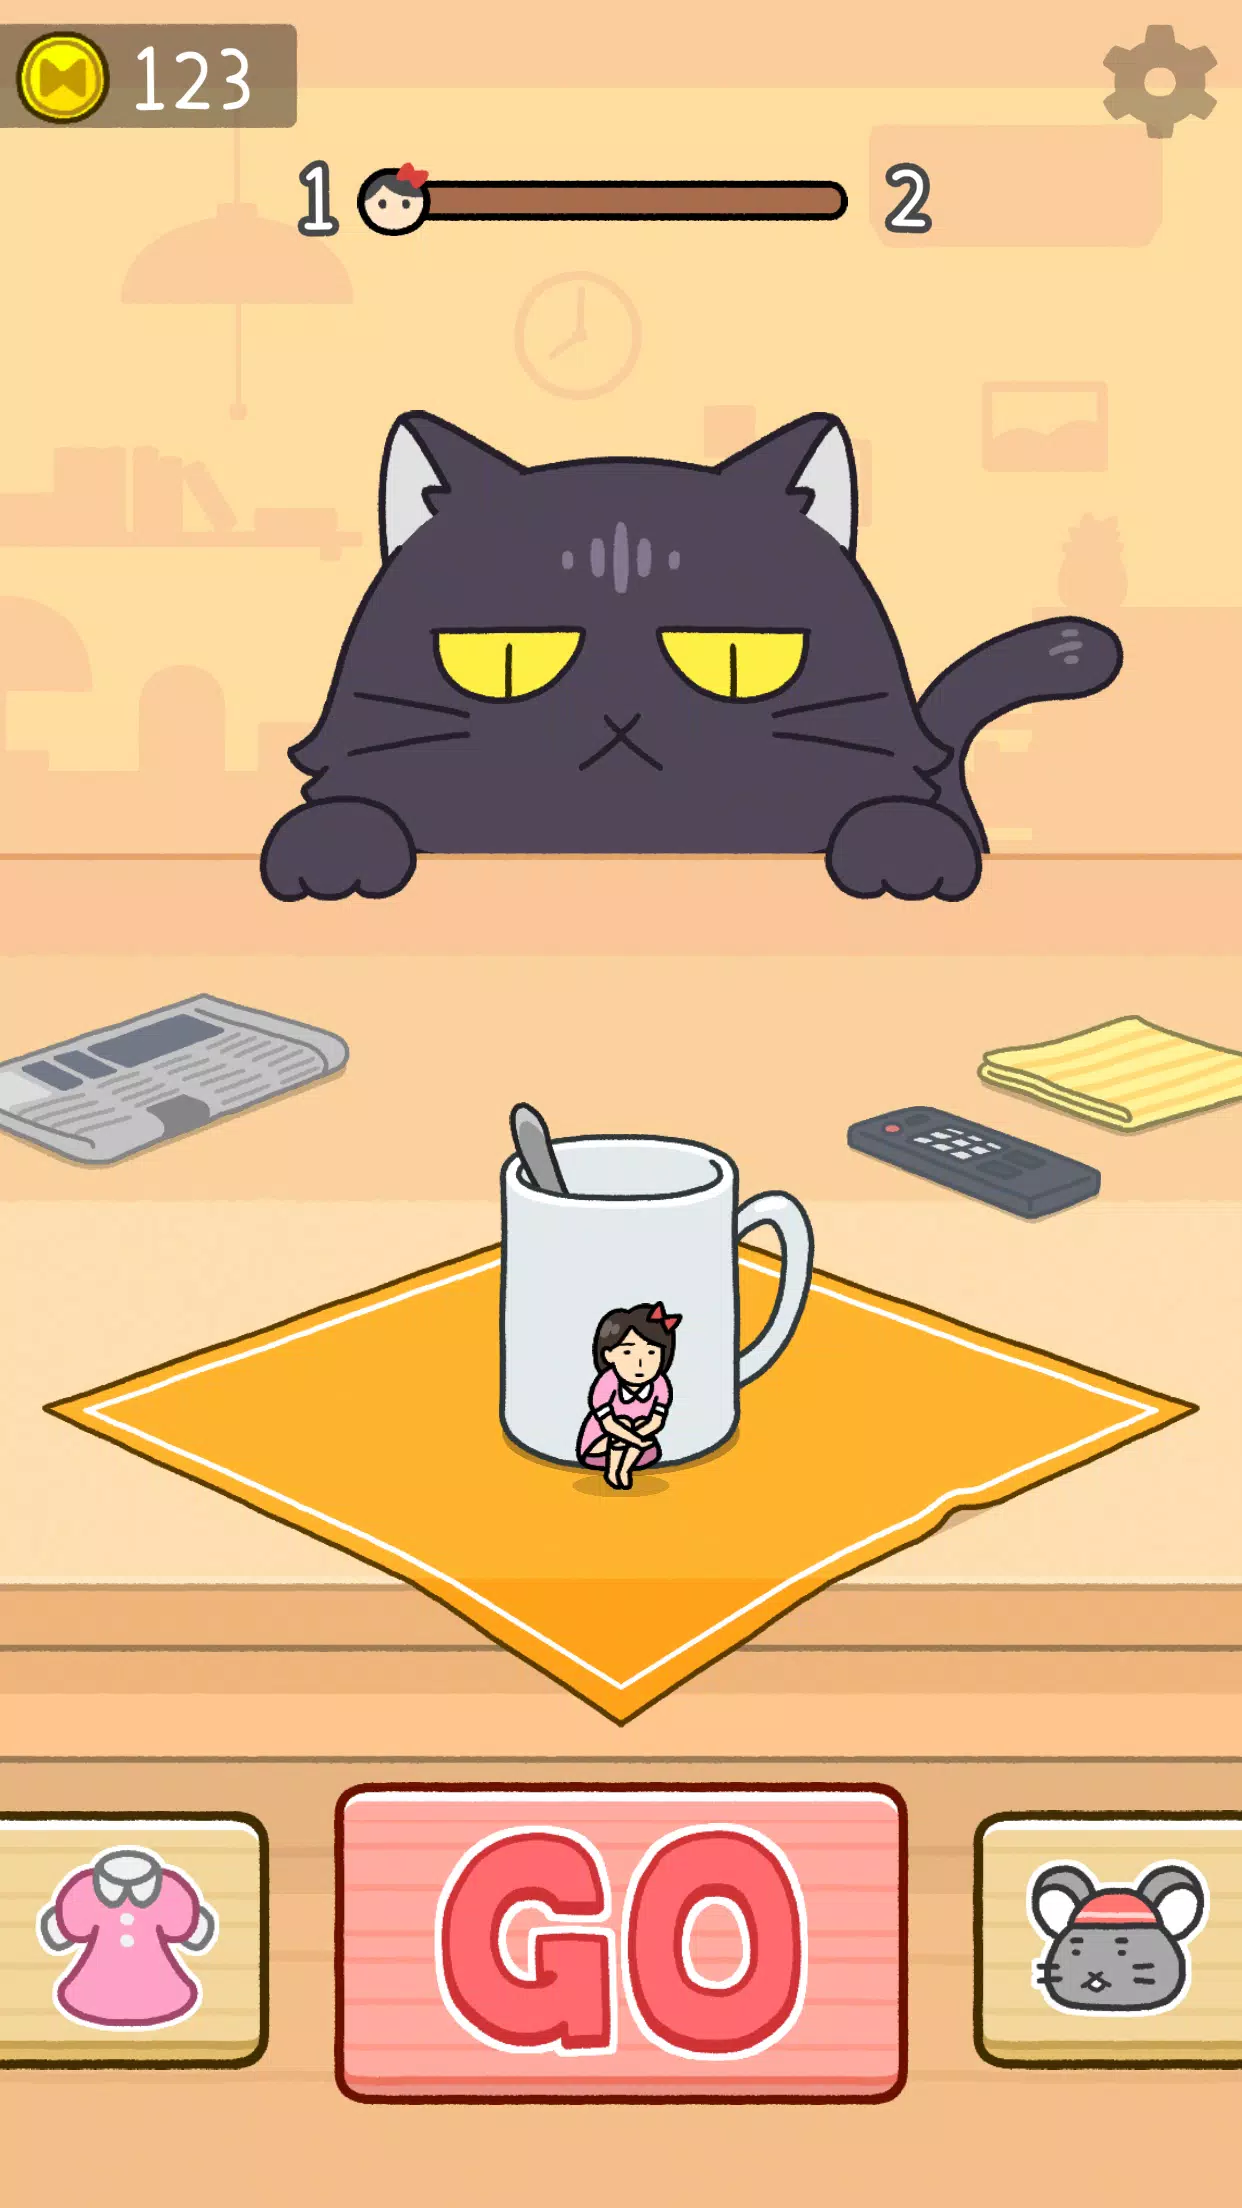 Download do APK de jogo do gato de desenhar para Android